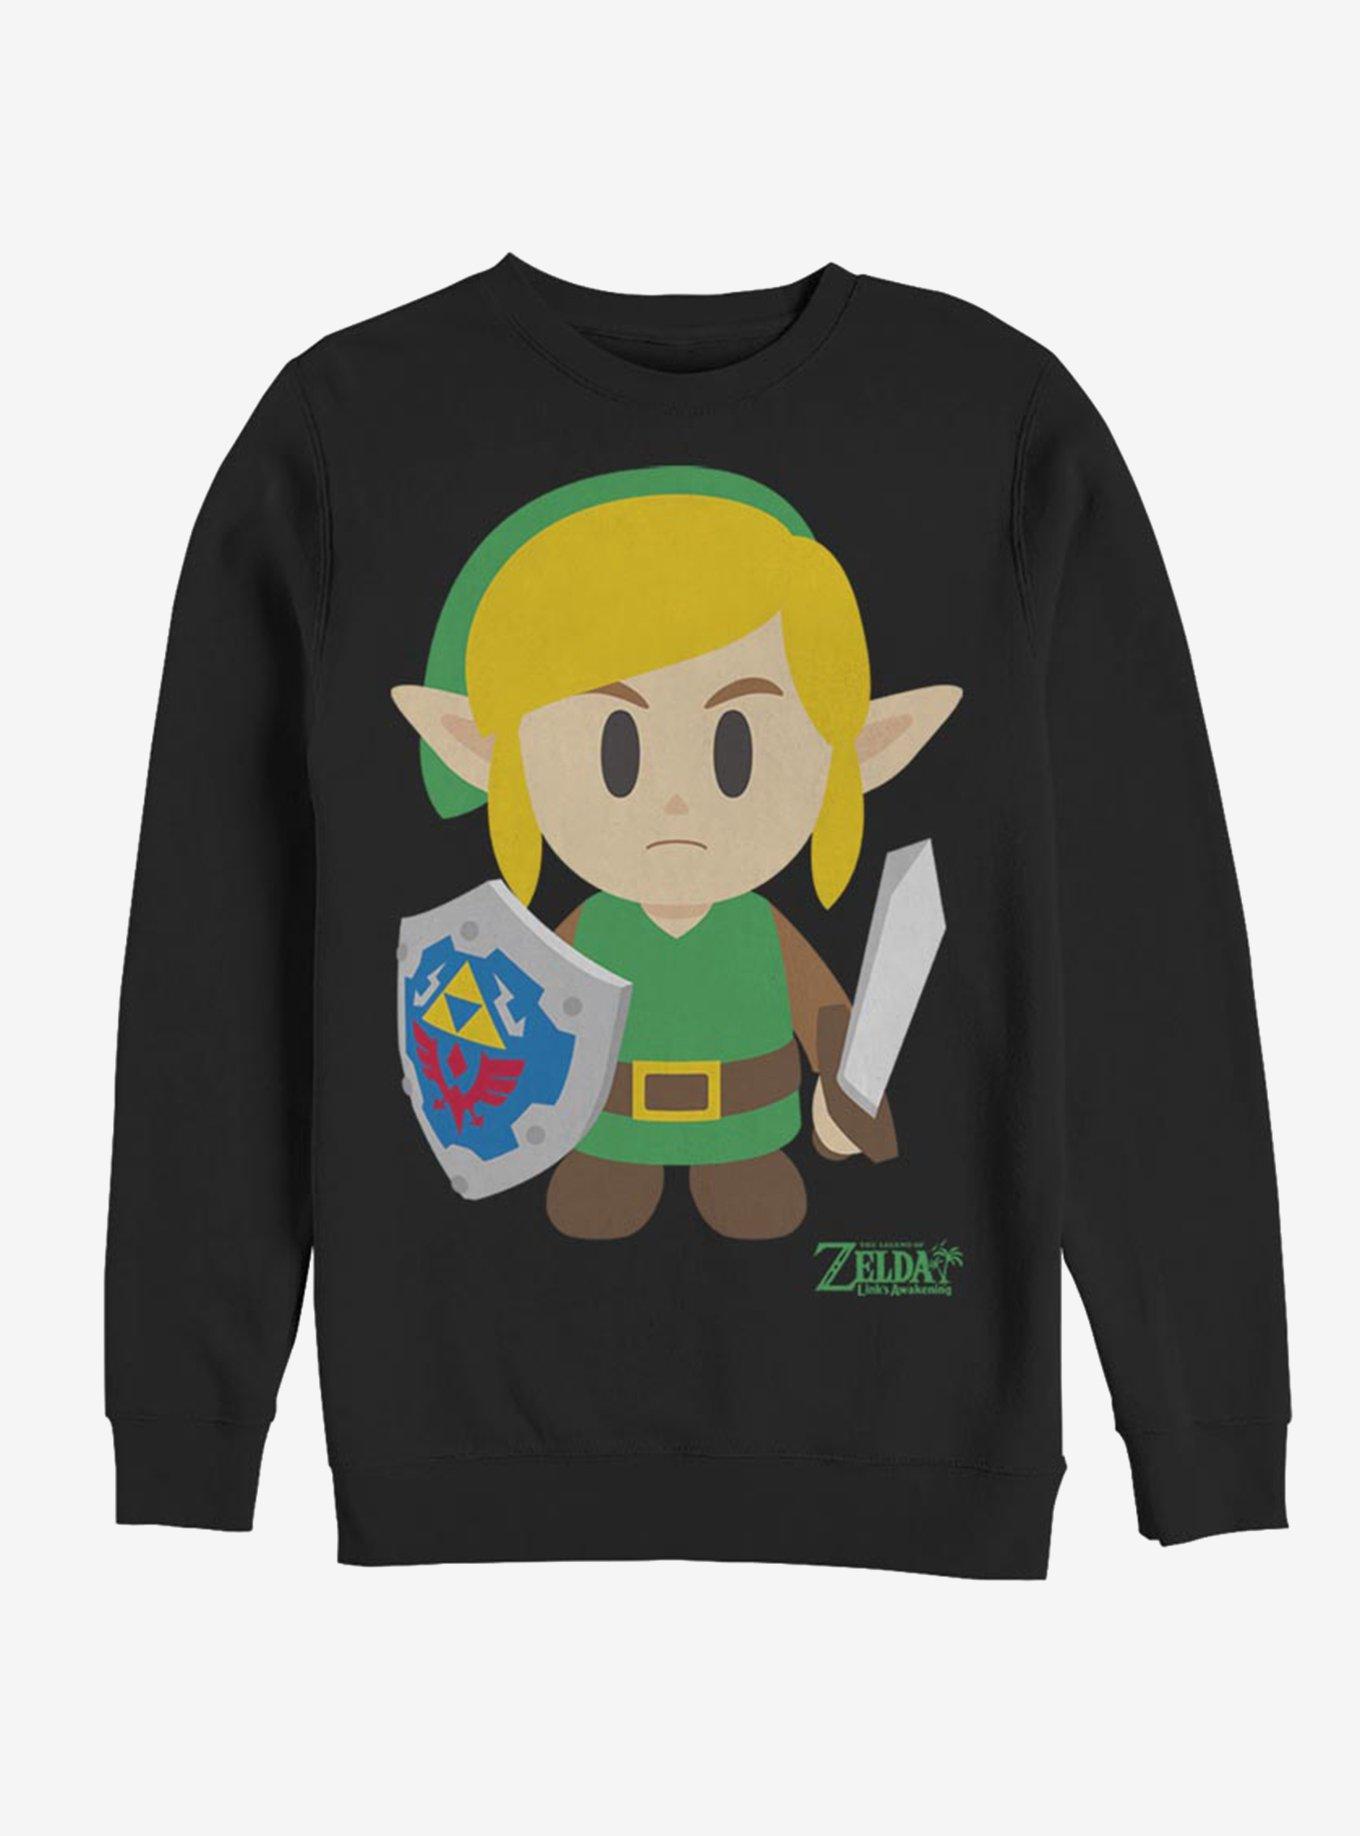 Nintendo The Legend of Zelda: Link's Awakening Link Avatar Color Sweatshirt, BLACK, hi-res